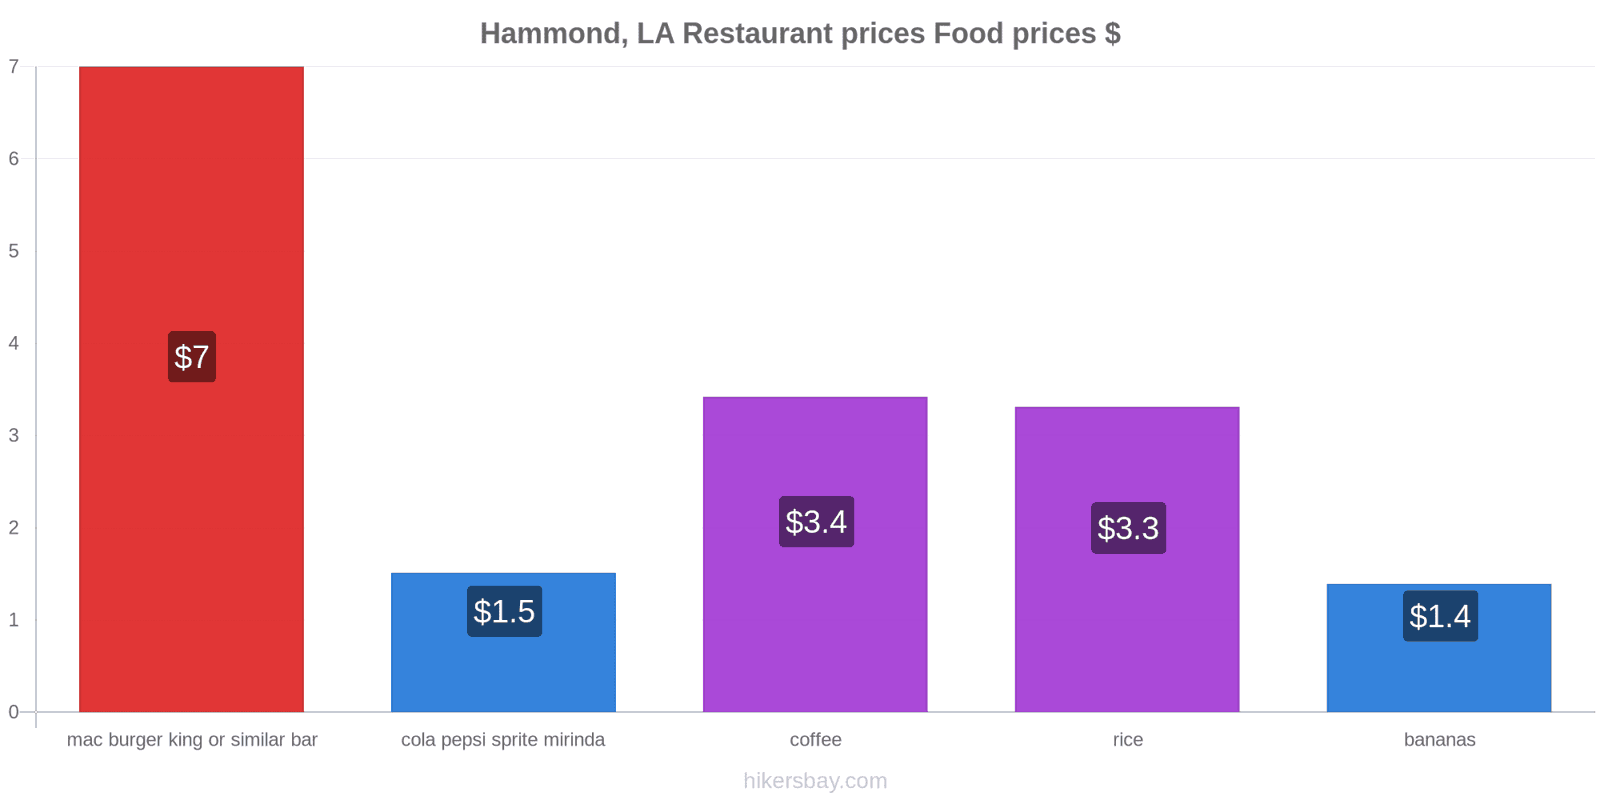 Hammond, LA price changes hikersbay.com